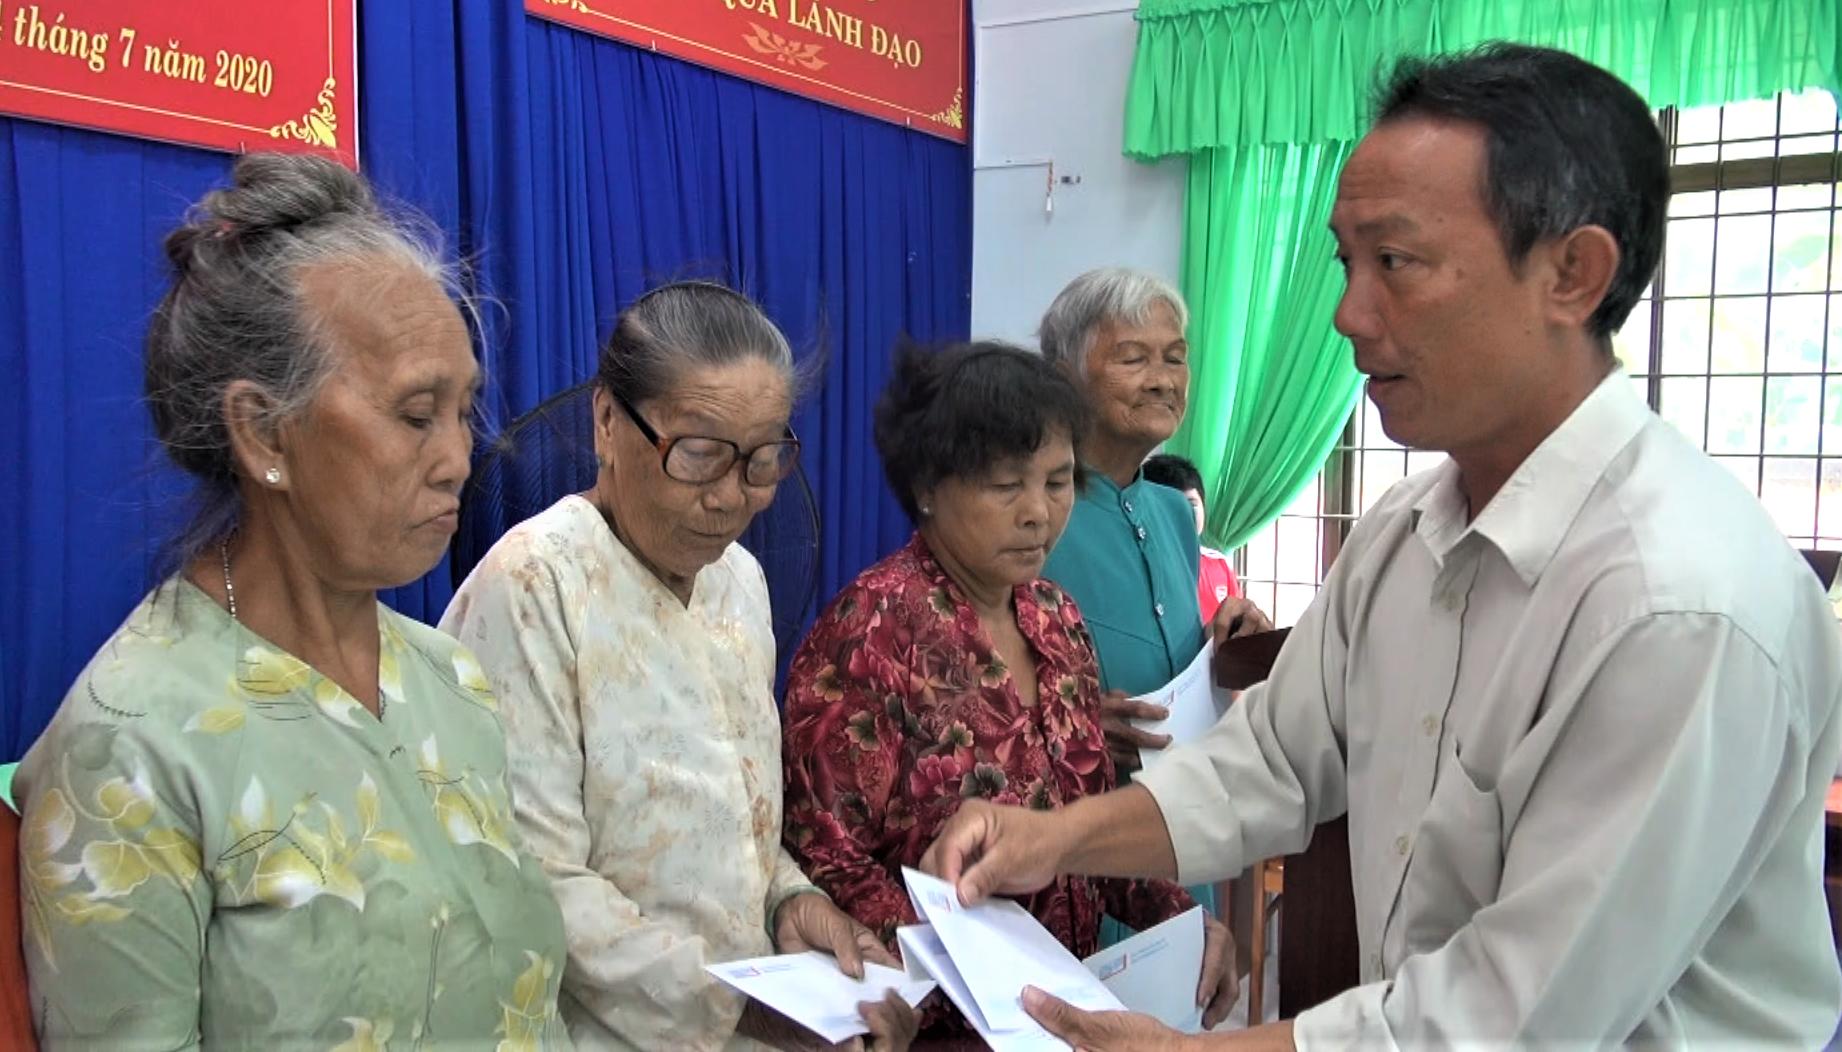 Ông Huỳnh Quang Khải, Phó Bí thư Đảng ủy xã Long Sơn trao quà cho các gia đình chính sách trên địa bàn xã Long Sơn.